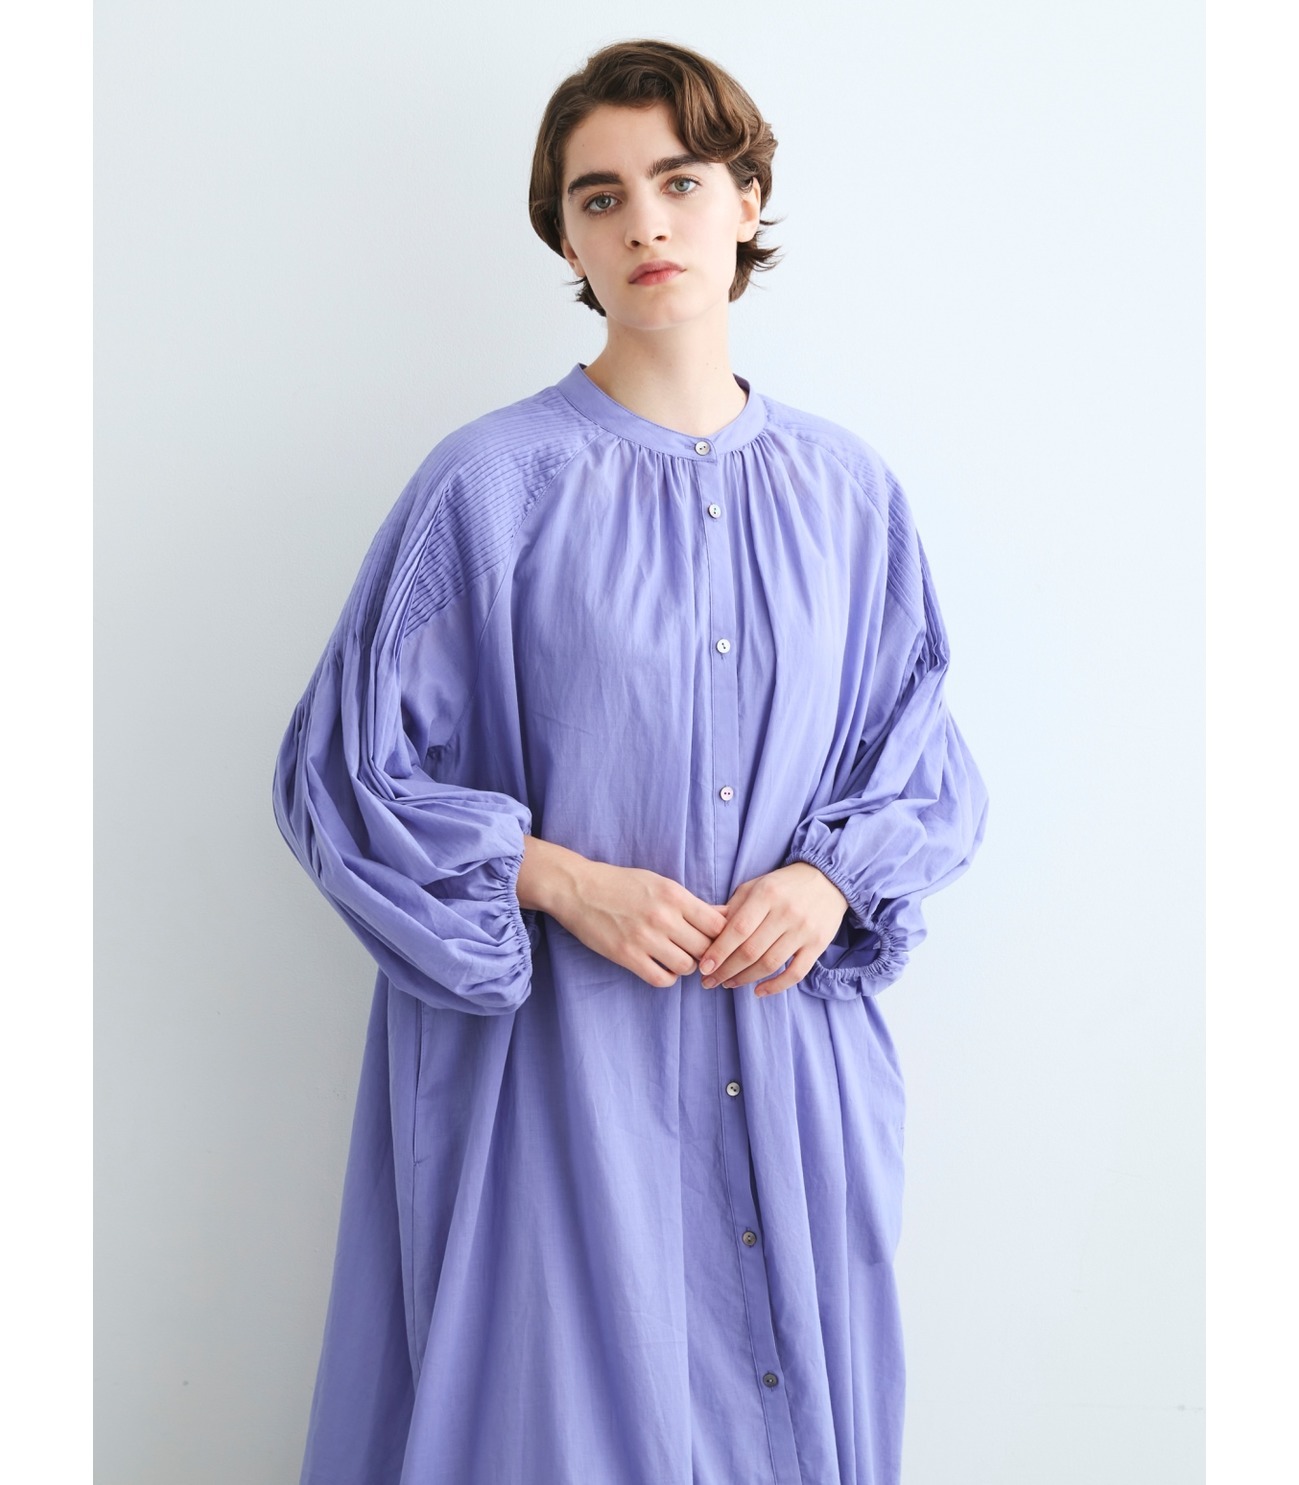 Cotton loan pintuck dress 詳細画像 sheer purple 8